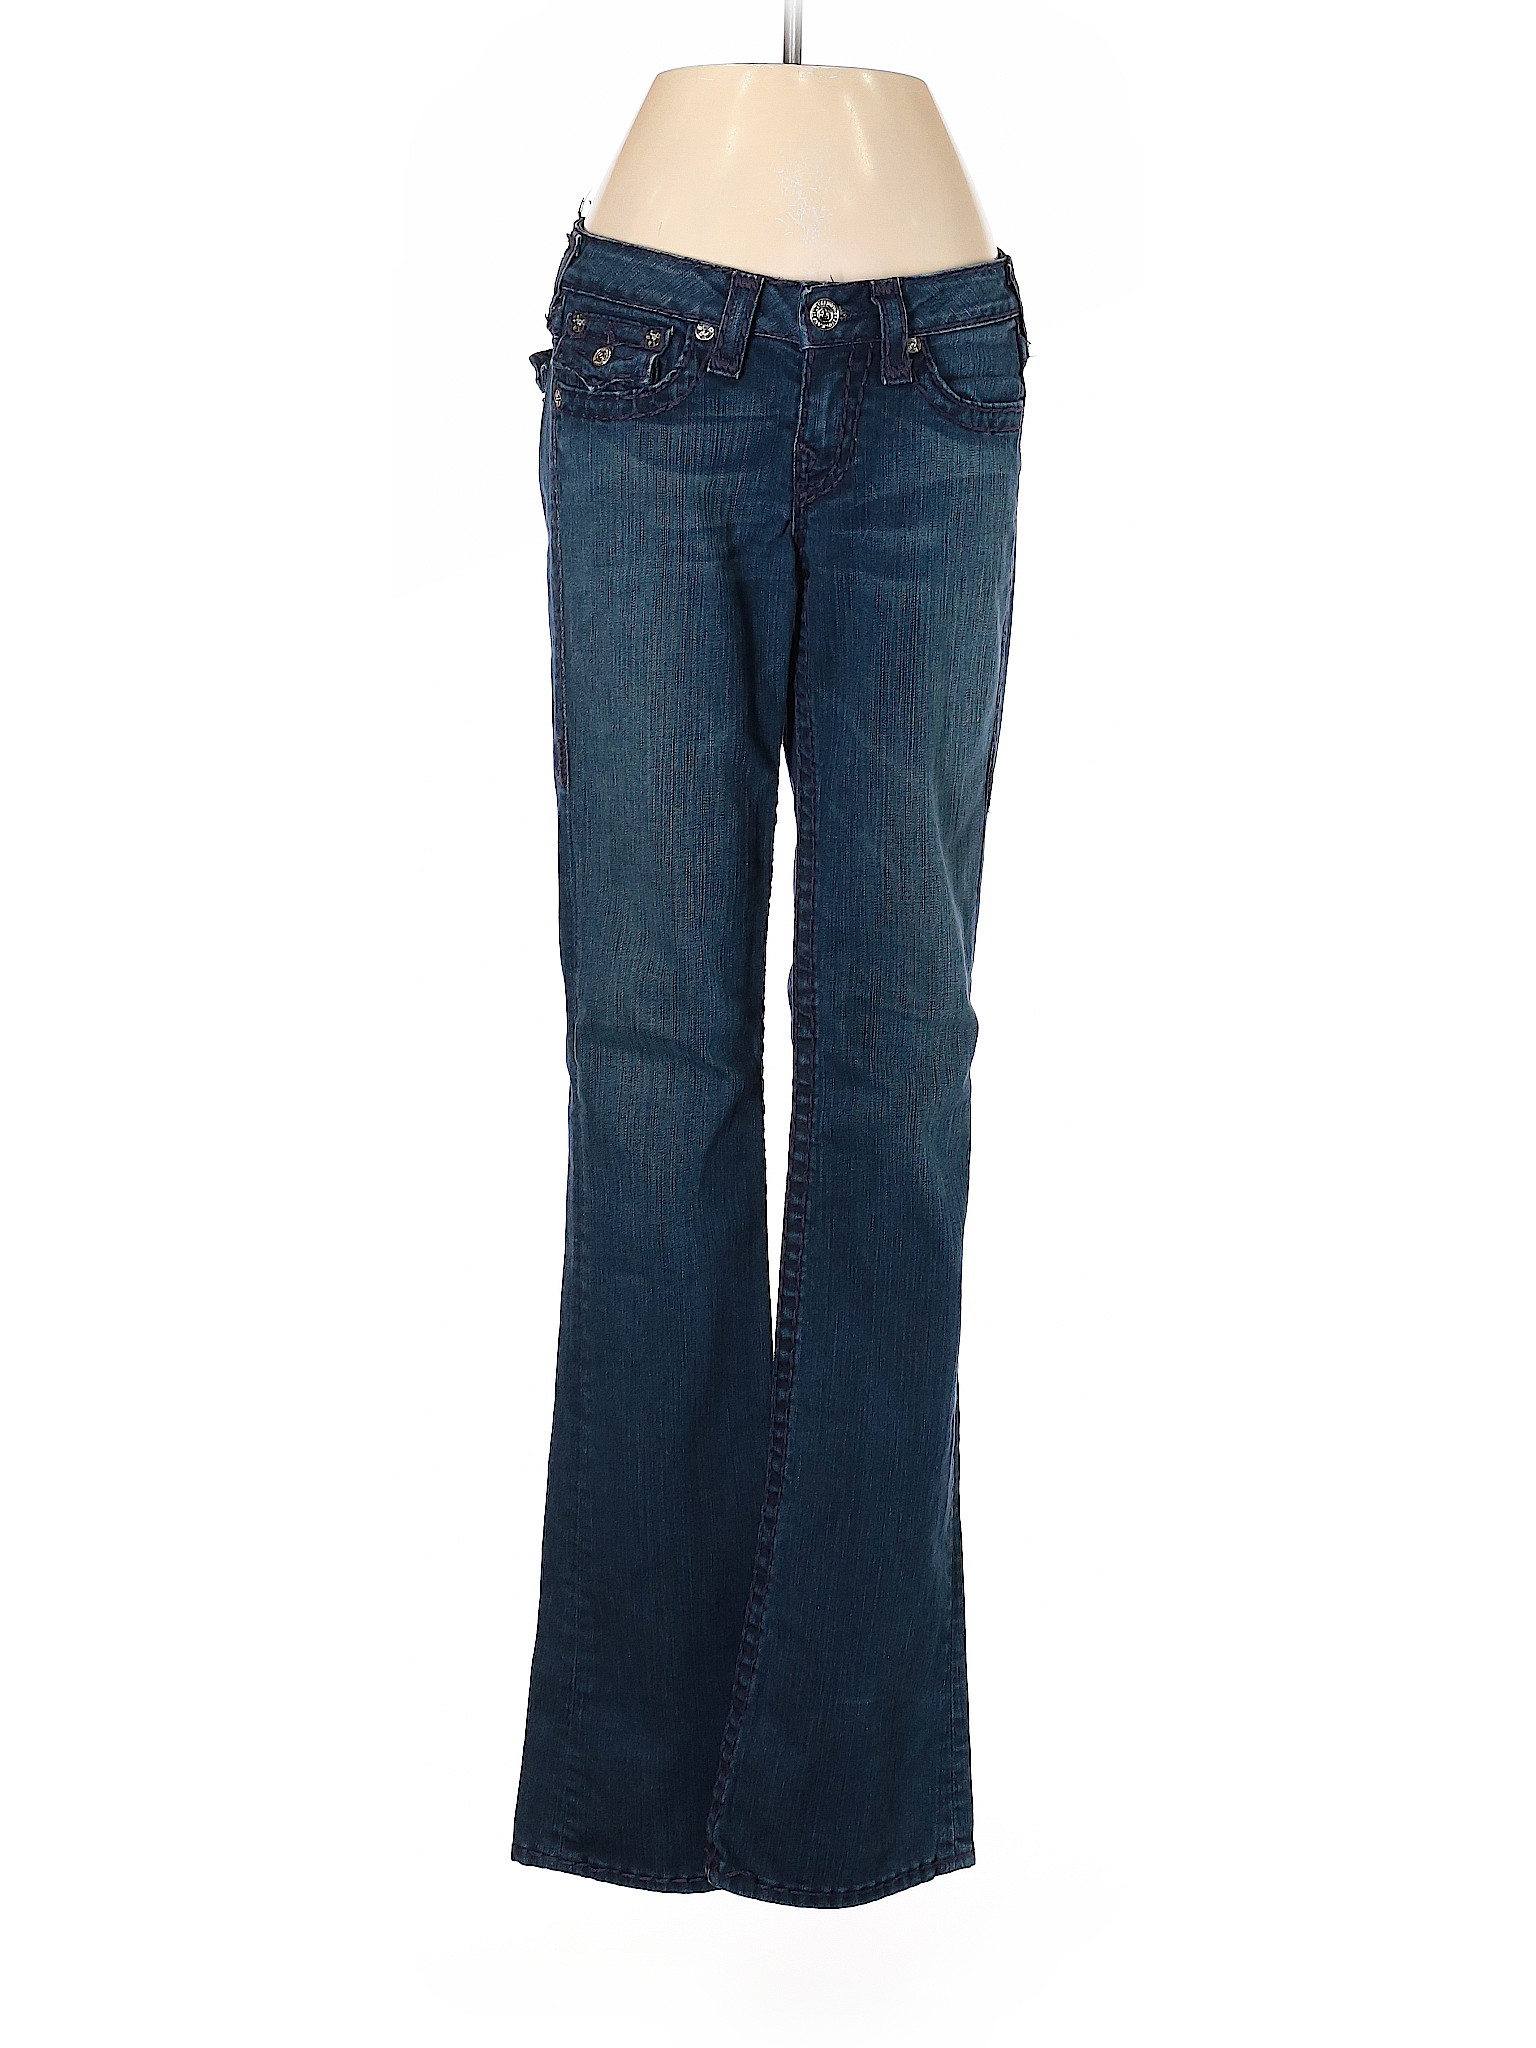 True Religion Blue Jeans 27 Waist - 85% off | thredUP